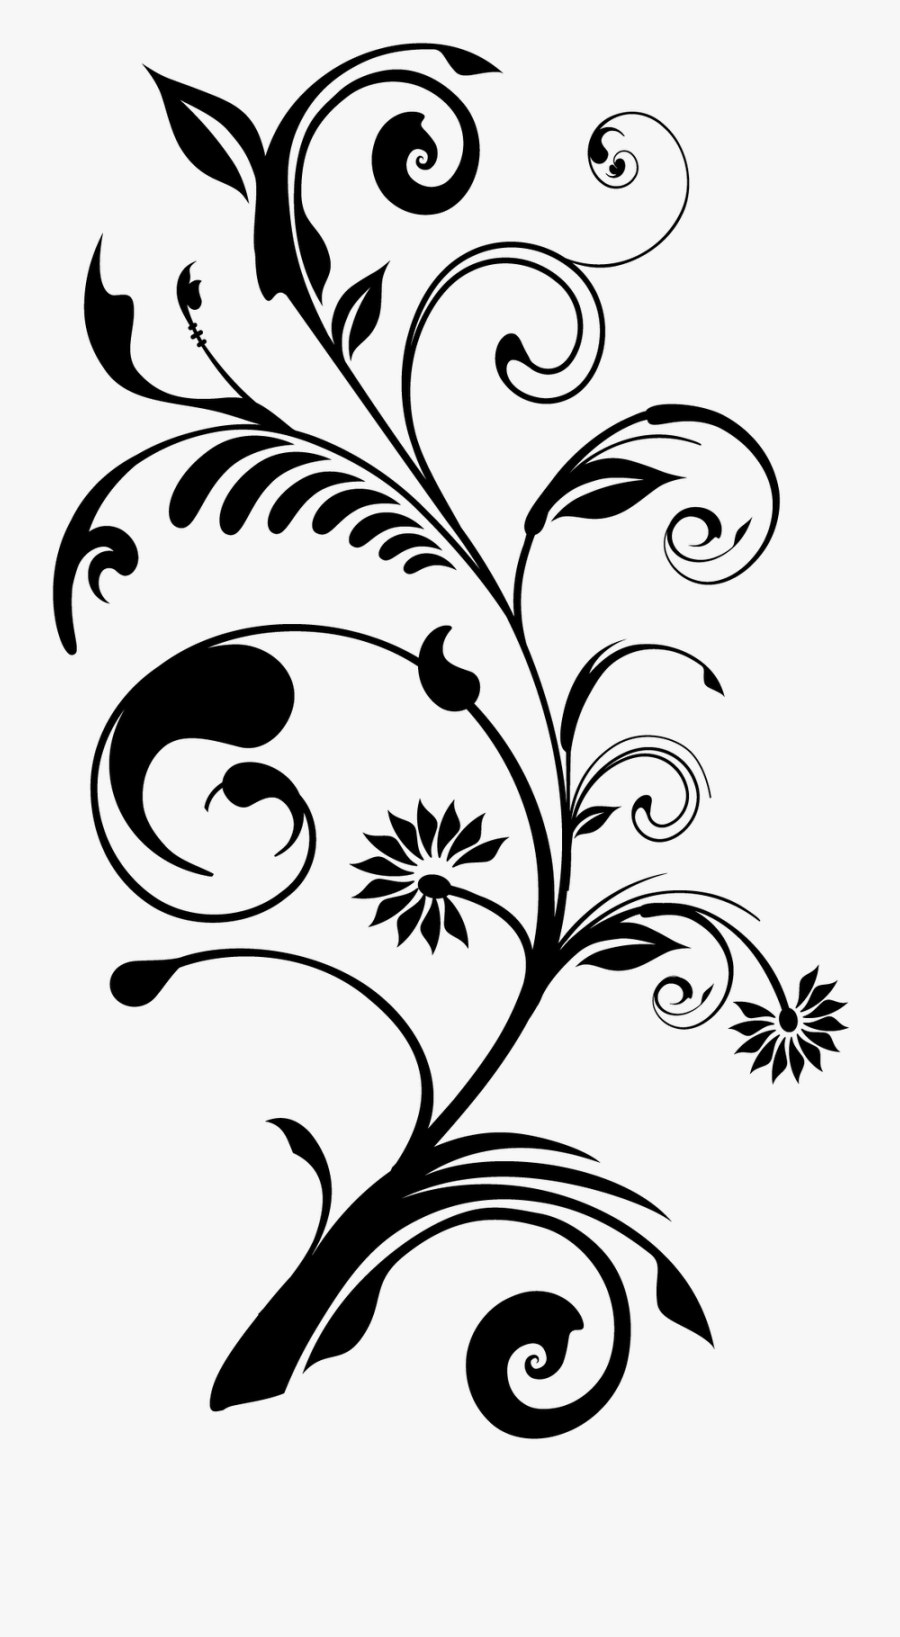 Flower Floral Design Desktop Wallpaper - Download Vektor Bunga Png, Transparent Clipart